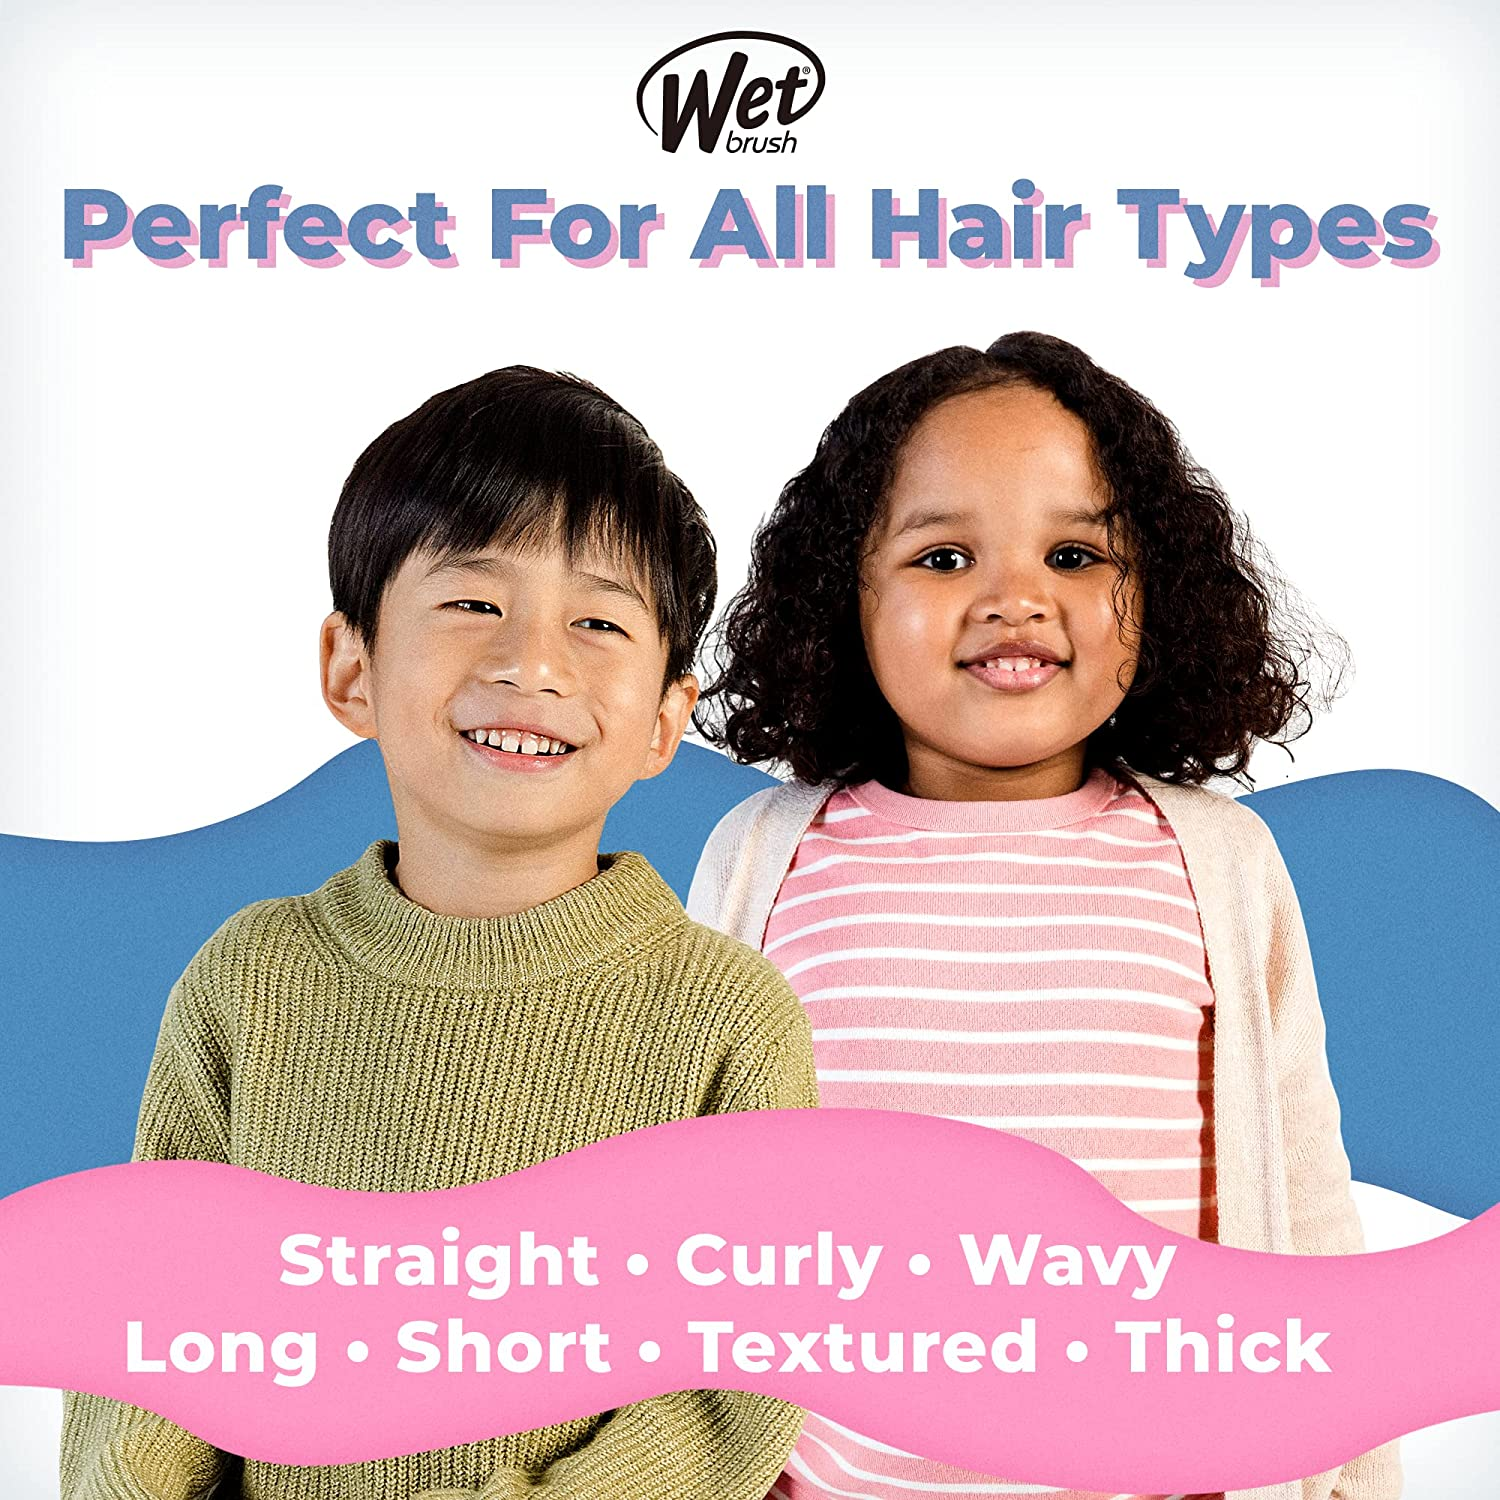 Wet Brush Hair Brush Kids Detangler - Detangling Knots, Snag-Free, Anti-Static Brush, Intelliflex Bristles, No Pain, Split-Ends & Hair Breakage, Chevron Print, Easy Hold, Child-Friendly Size